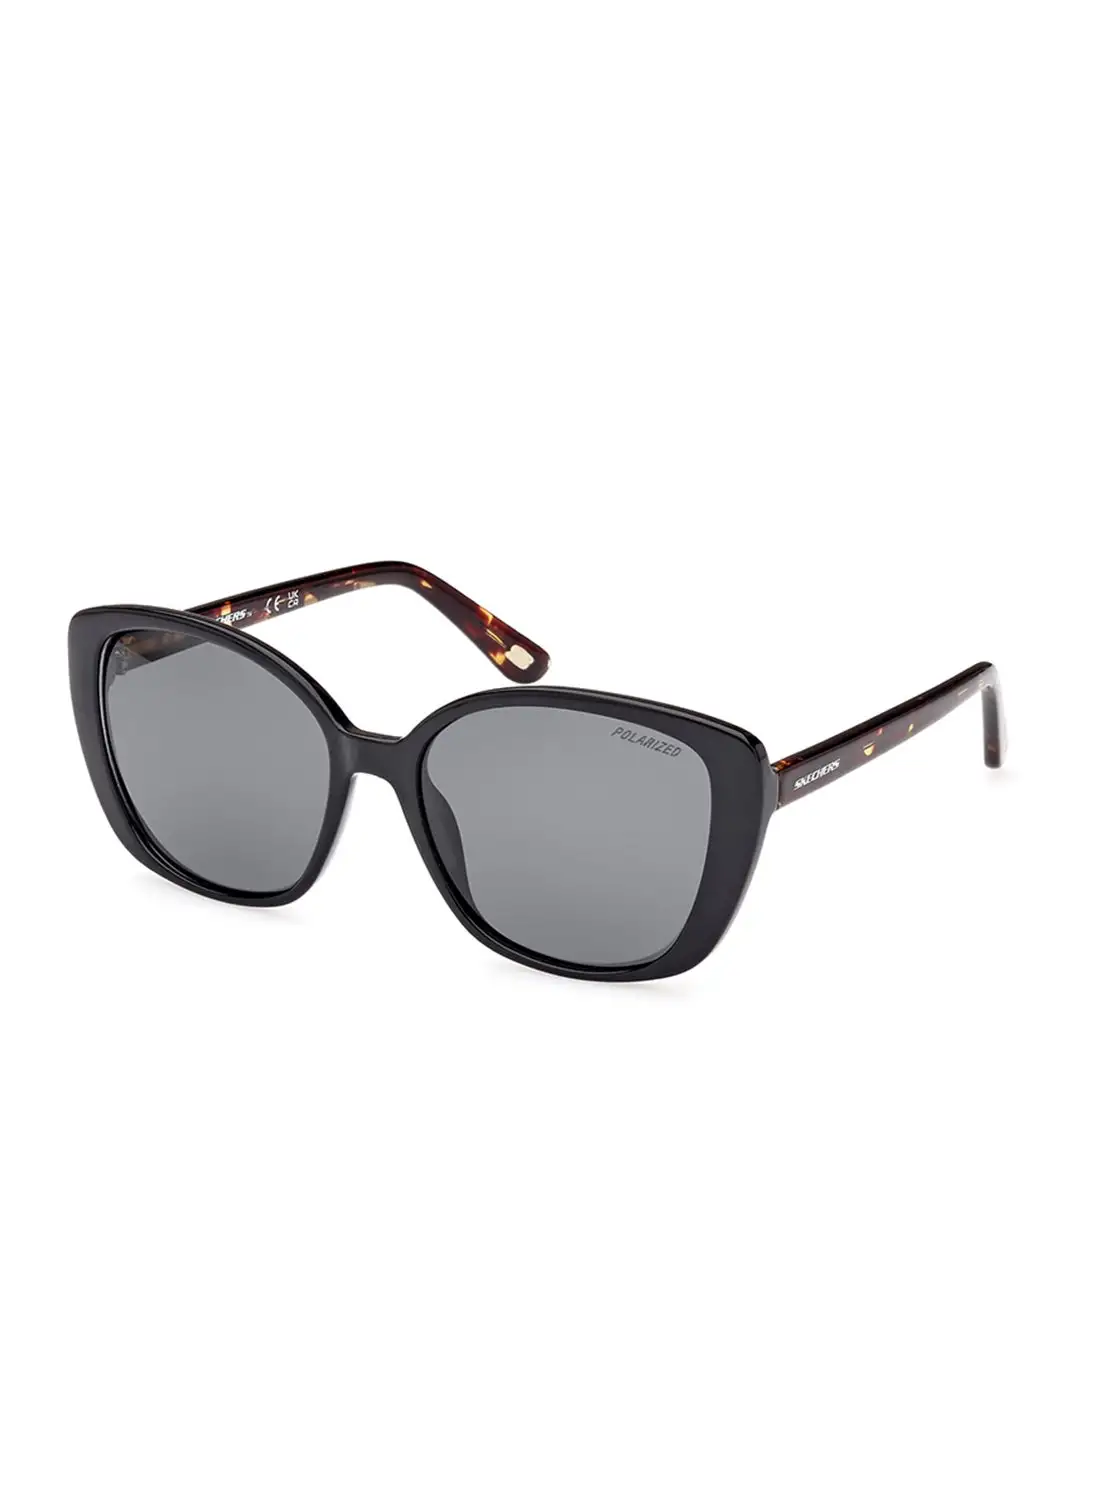 SKECHERS Women's Polarized Rectangular Shape Sunglasses - SE626505D56 - Lens Size: 56 Mm